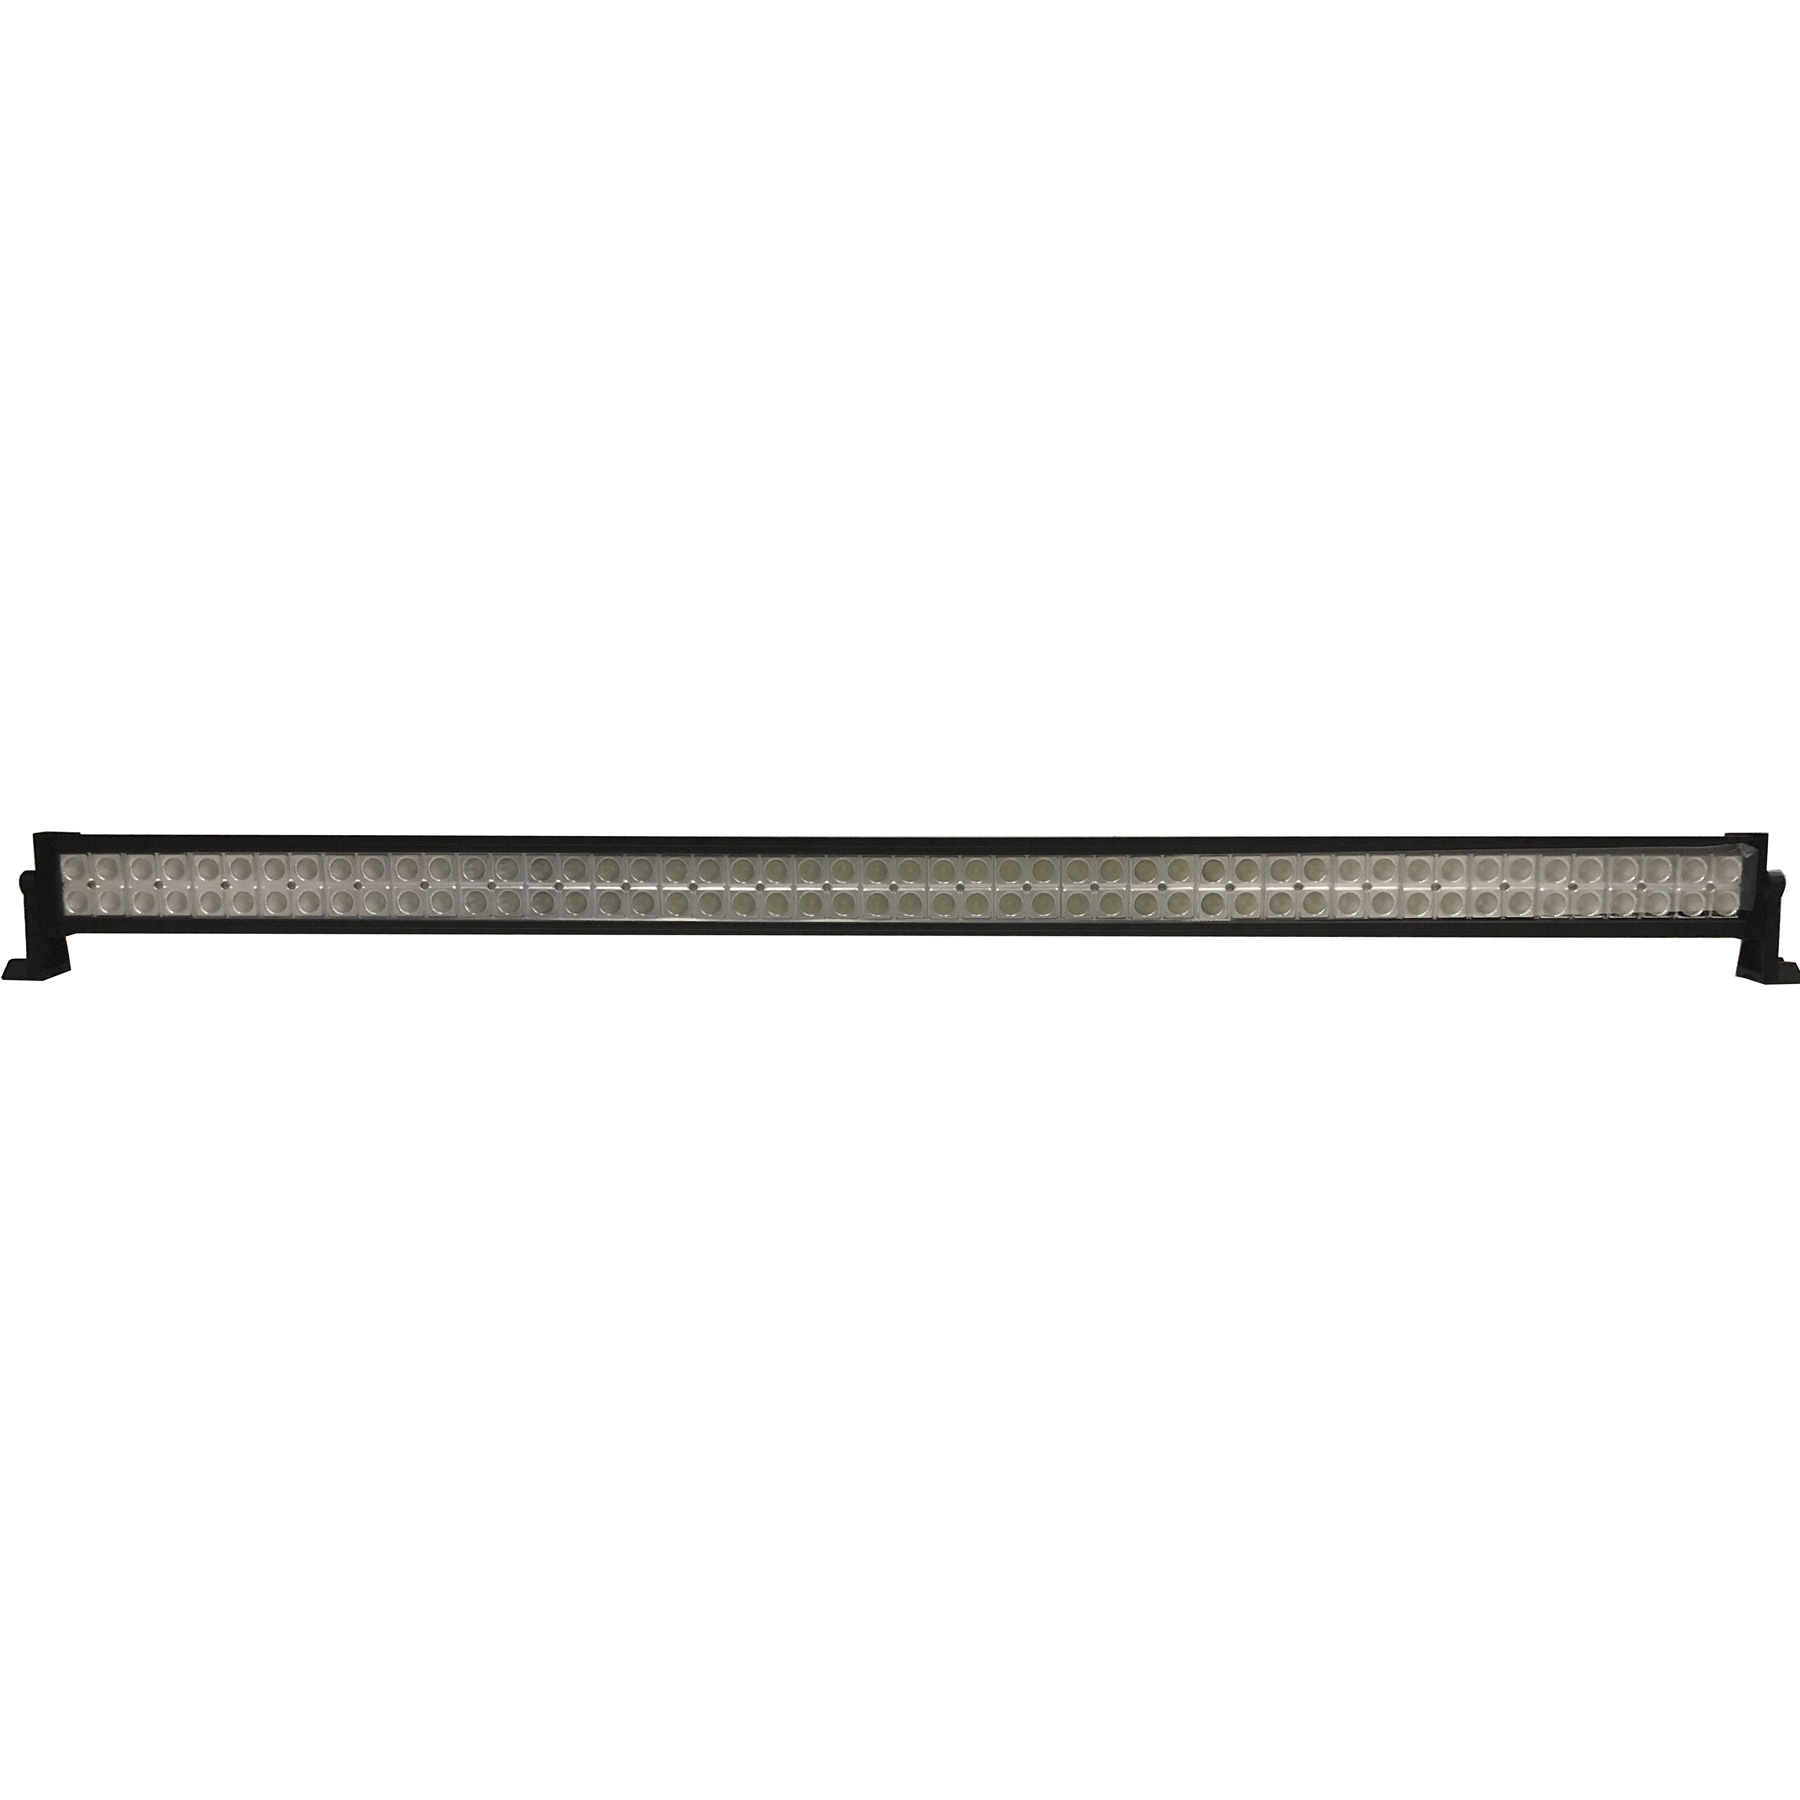 Barre de LED de 100 centimètres - Blanc